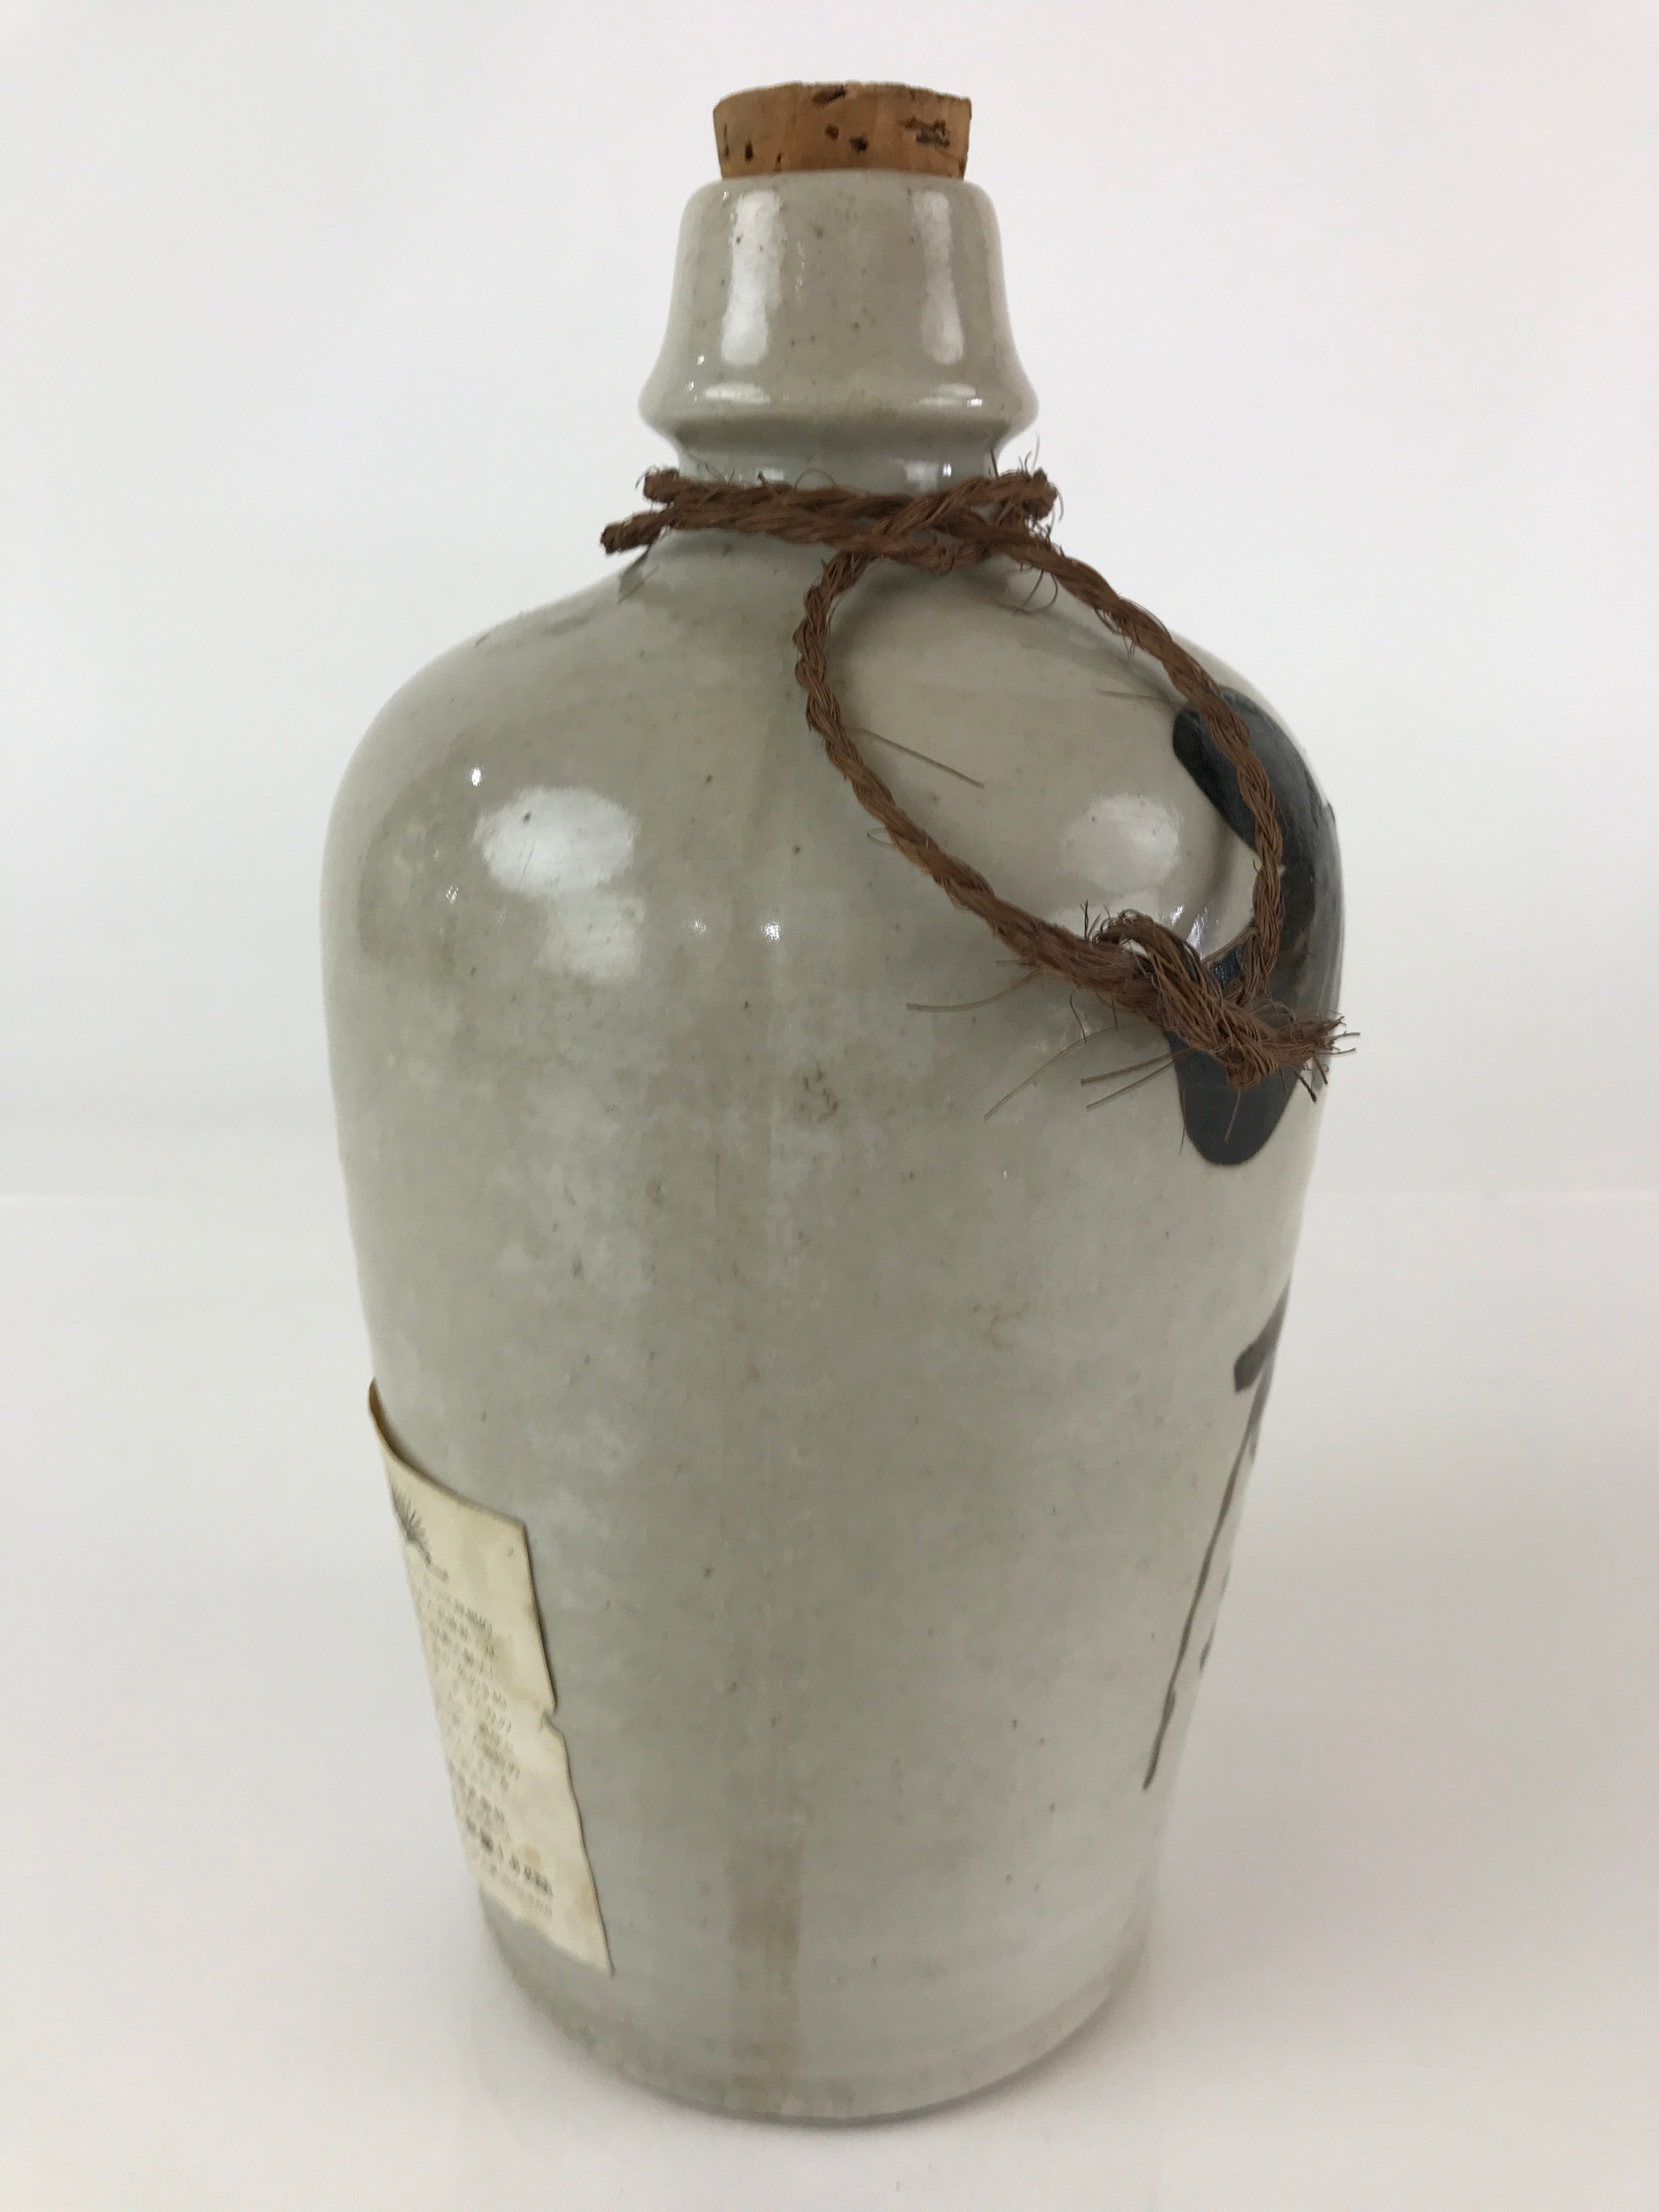 Japanese Ceramic Sake Bottle Tokkuri Vtg Pottery Gray Hand-Written Kanji TS452